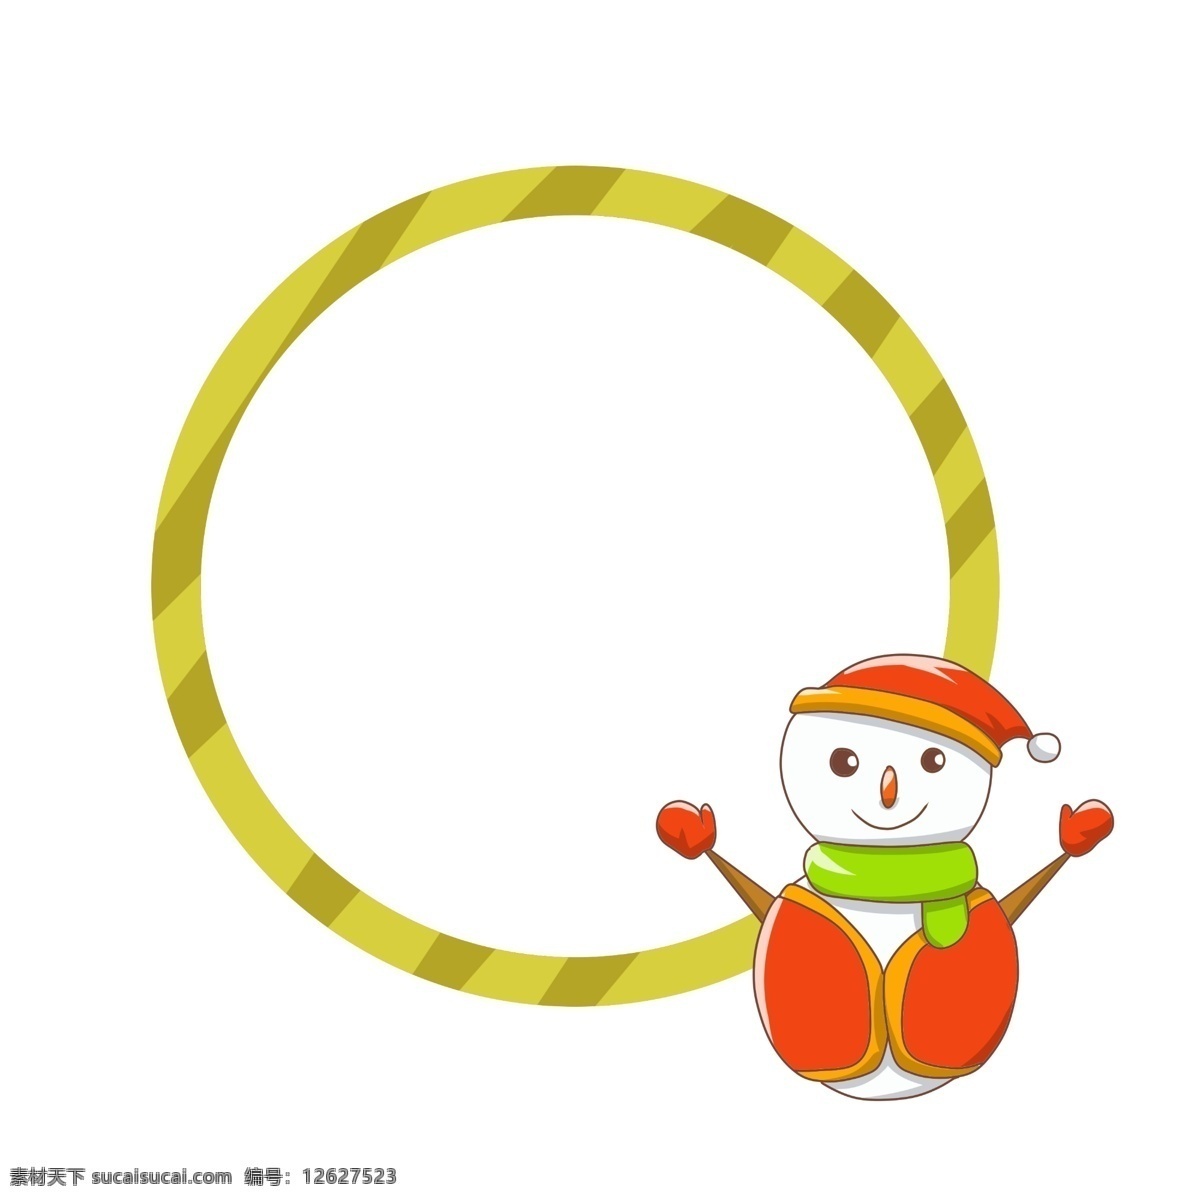 圣诞节 原型 圣诞老人 红色的圣诞帽 黄色的边框 圆形边框 漂亮的边框 手绘 边框 白色